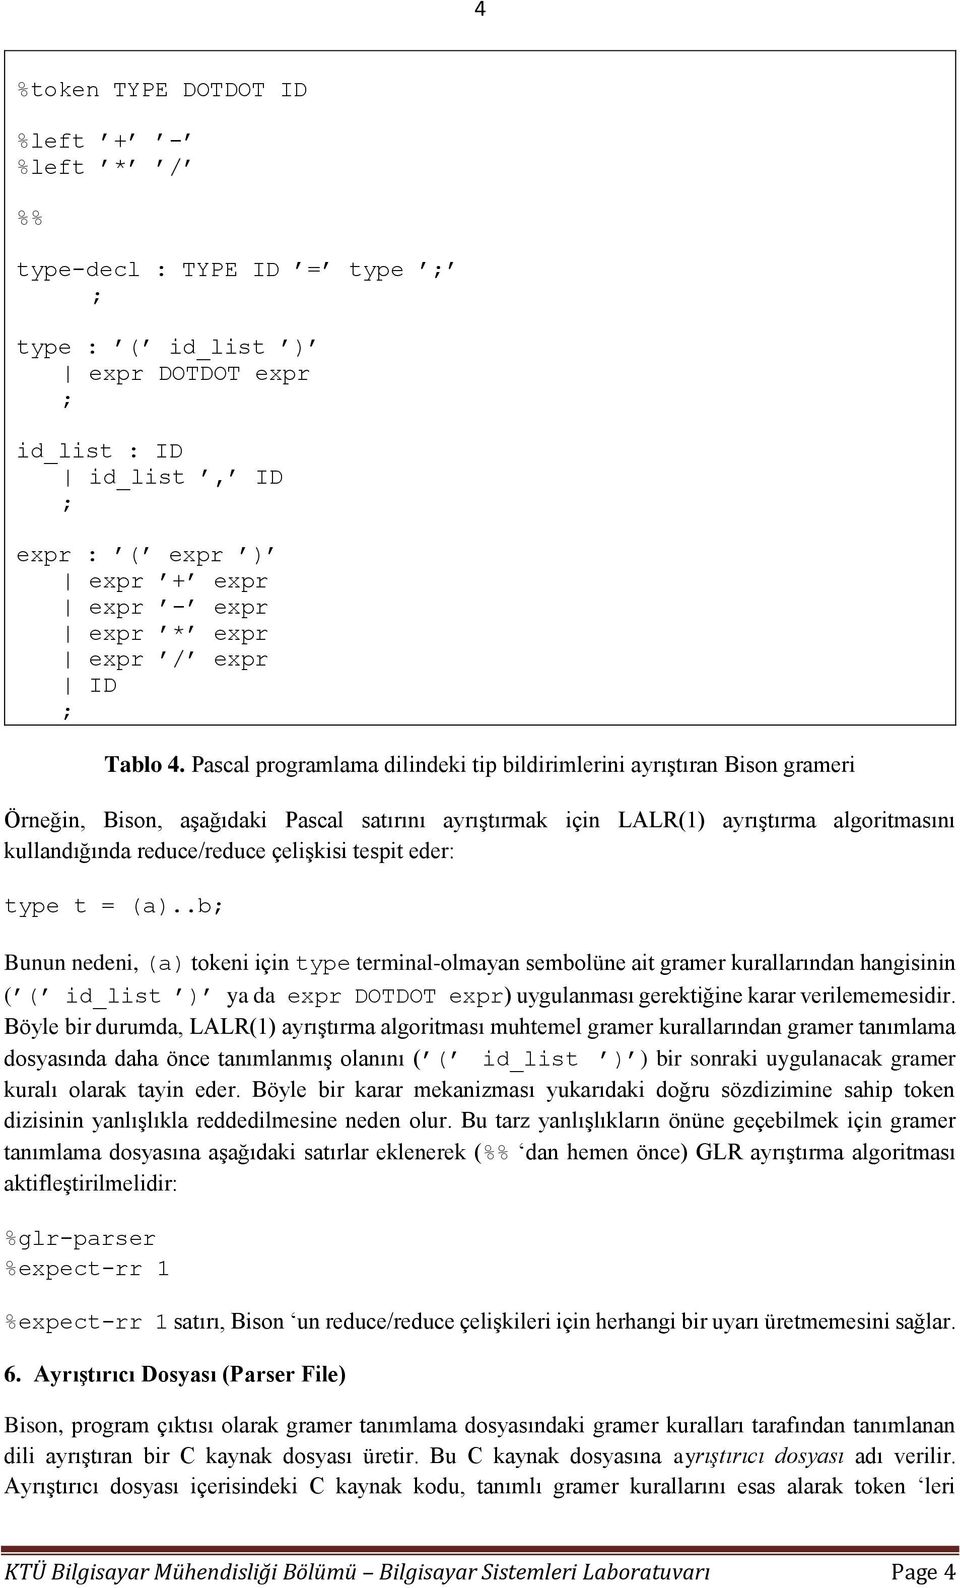 Pascal programlama dilindeki tip bildirimlerini ayrıştıran Bison grameri Örneğin, Bison, aşağıdaki Pascal satırını ayrıştırmak için LALR(1) ayrıştırma algoritmasını kullandığında reduce/reduce